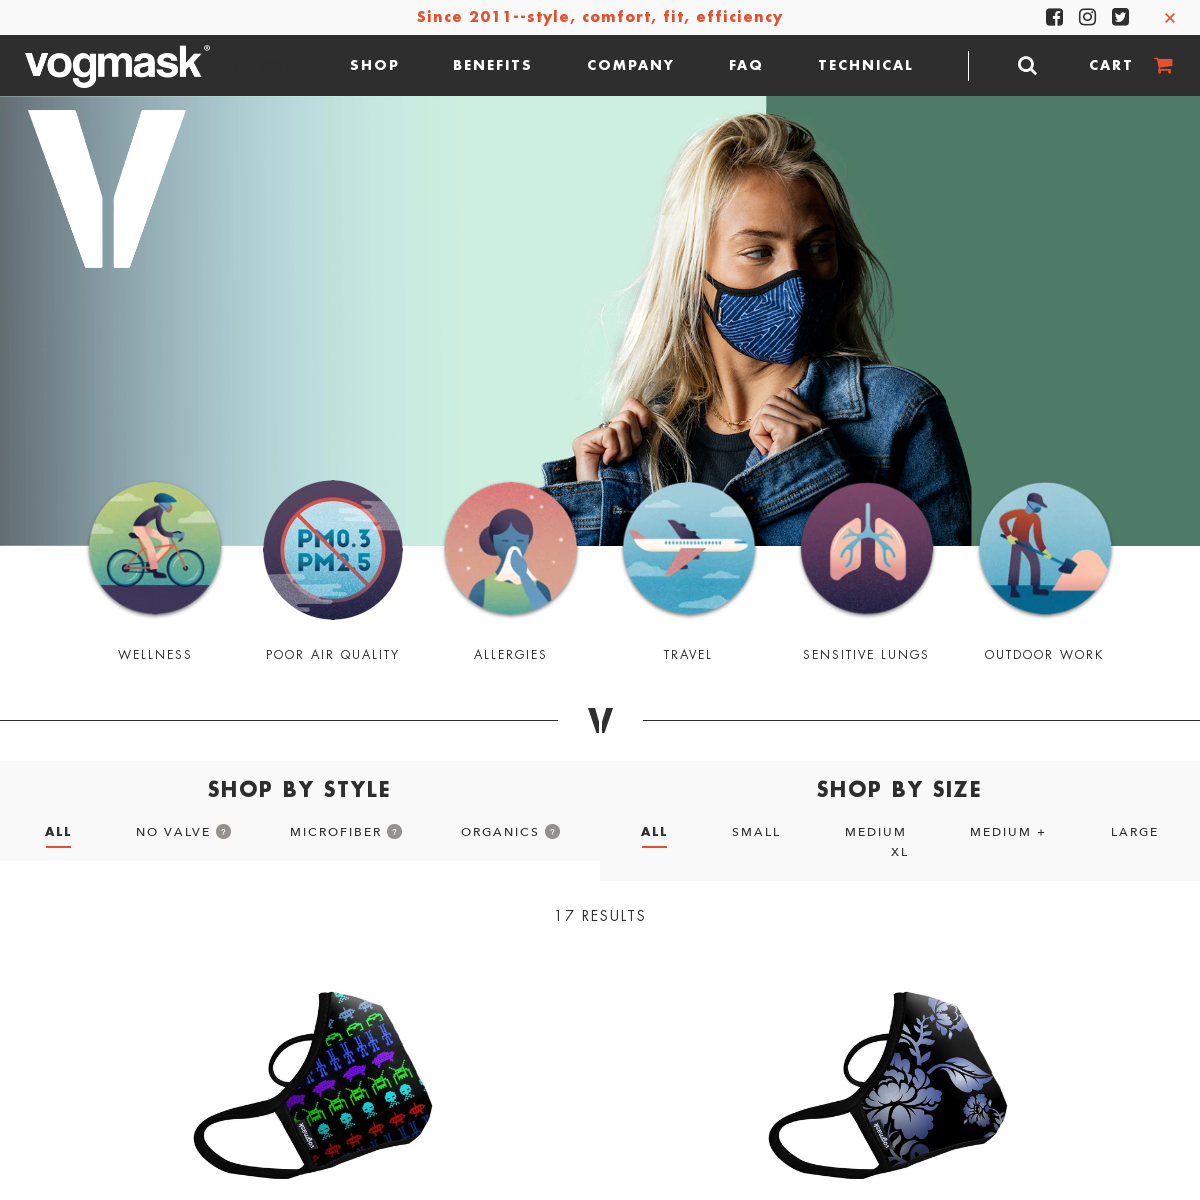 A complete backup of vogmask.com